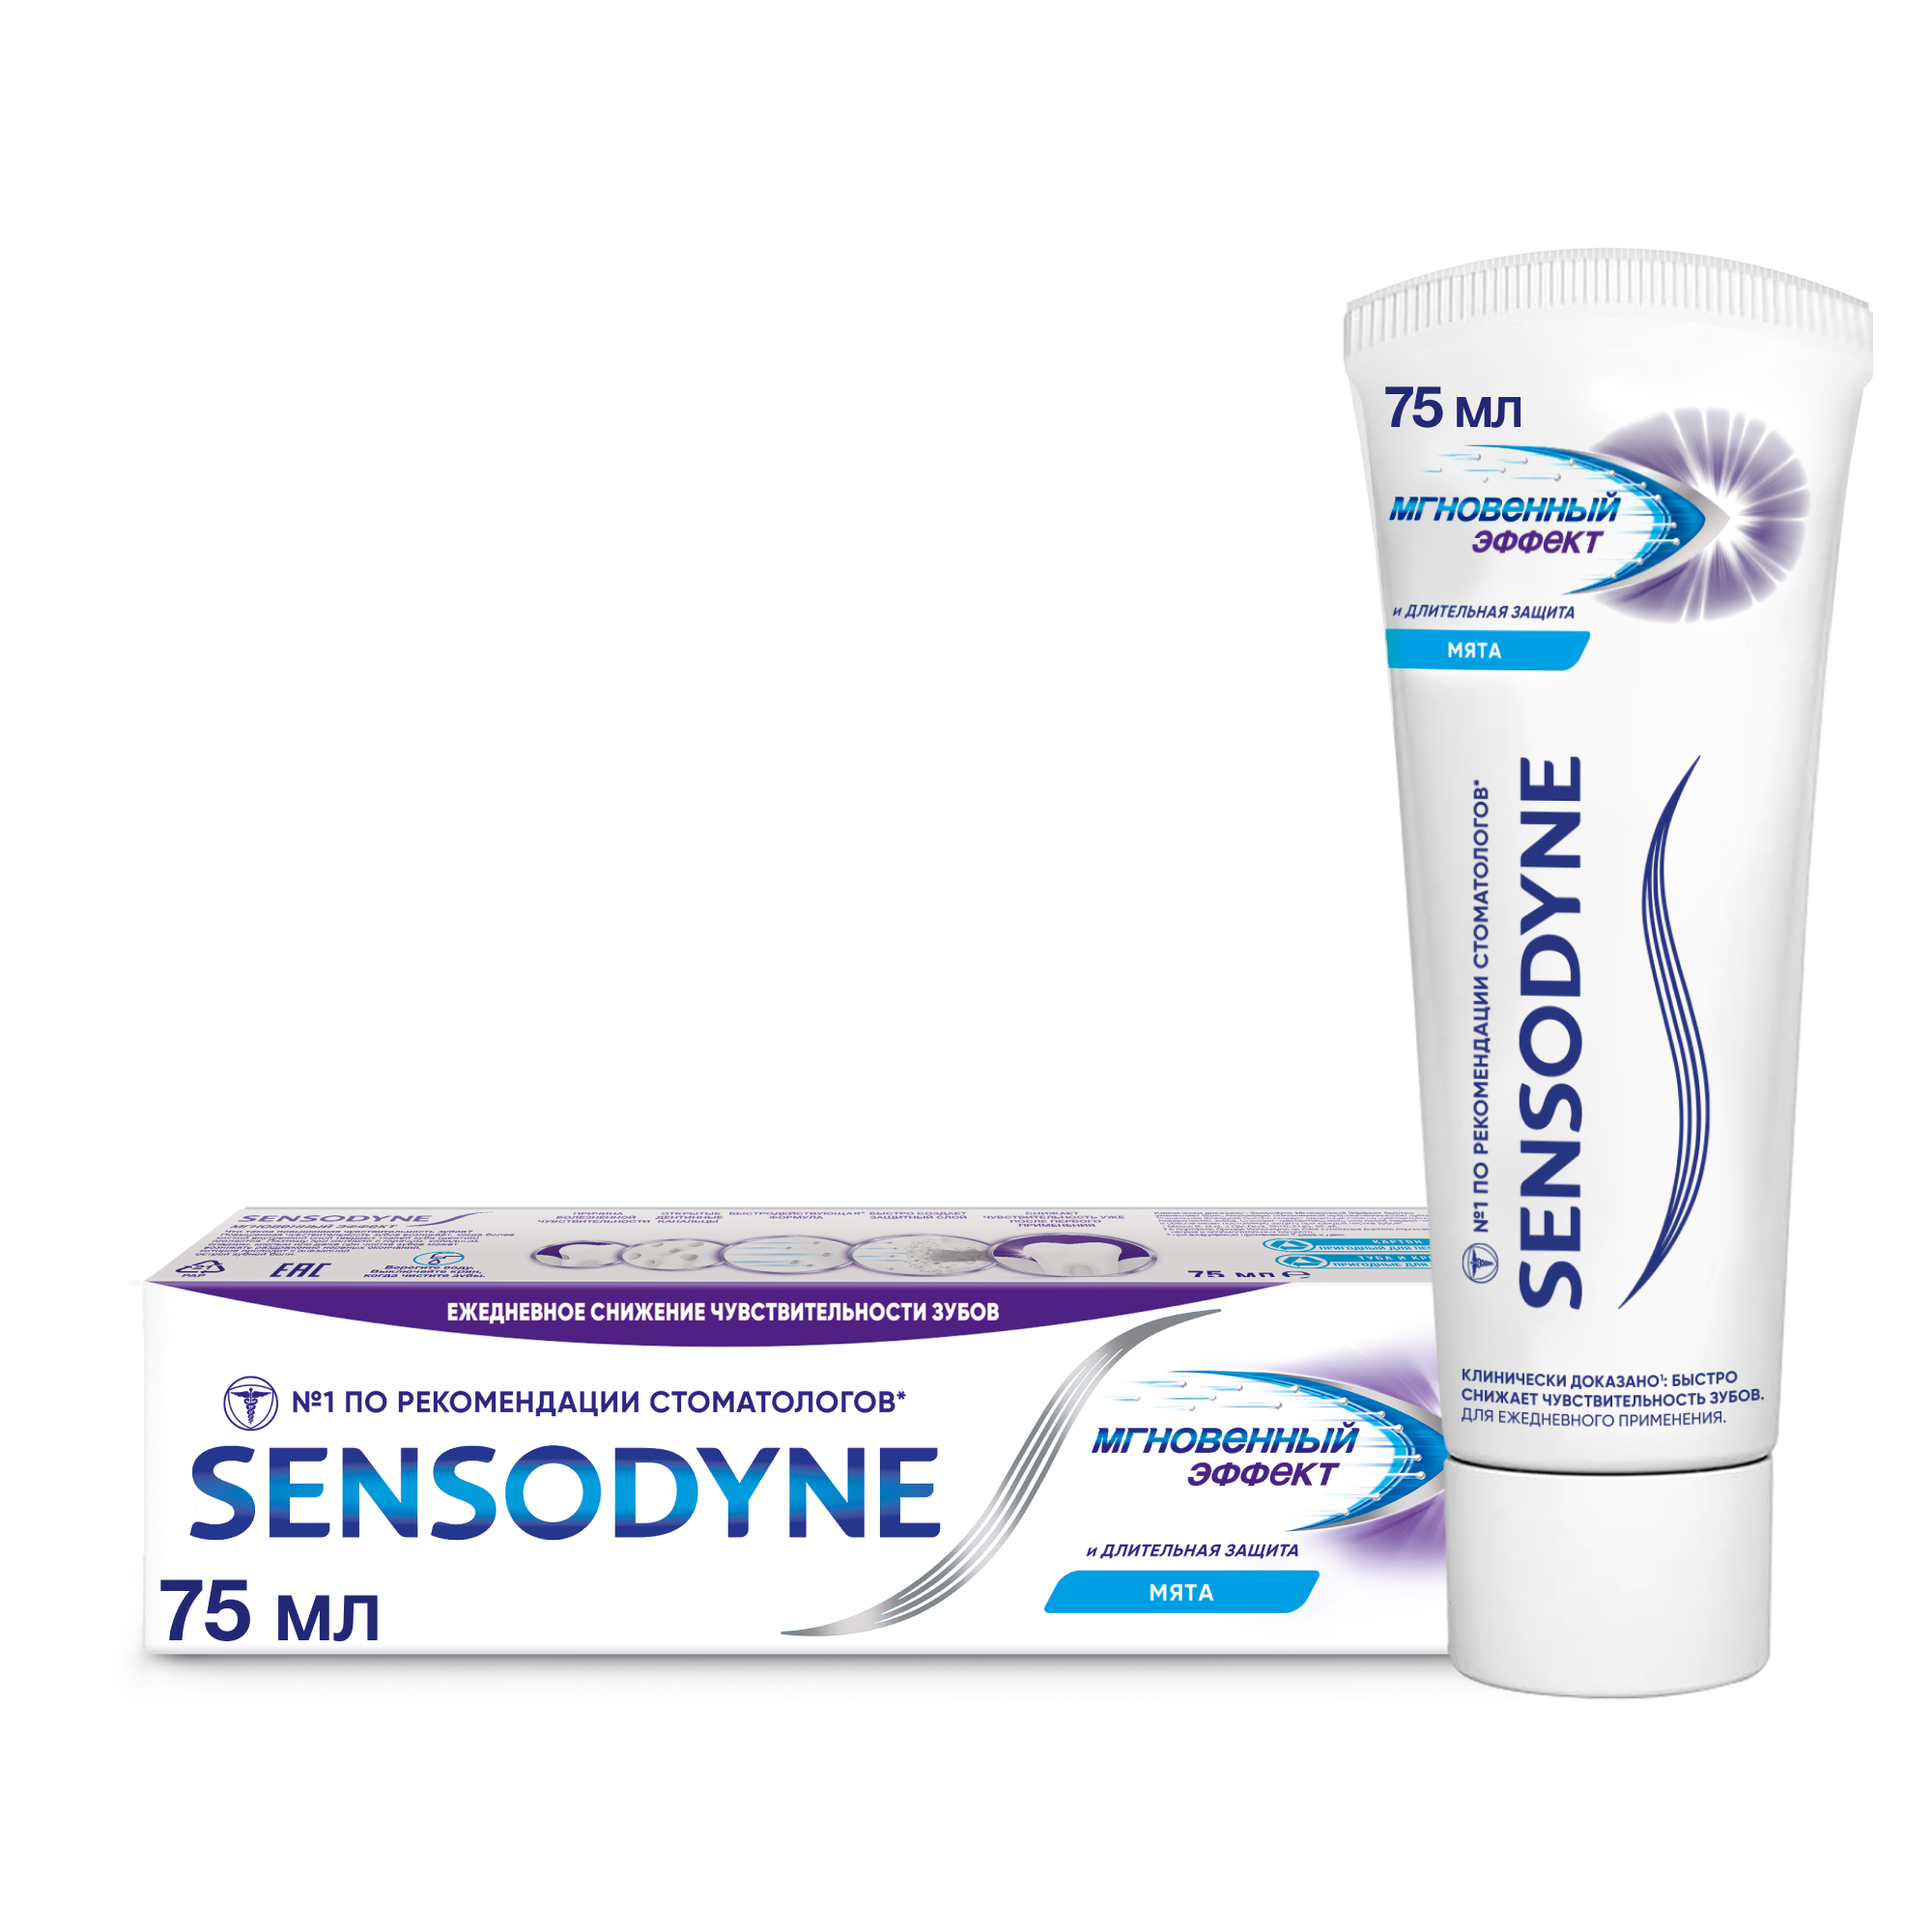 Зубная паста Sensodyne Мгновенный Эффект для чувствительных зубов с фтором, 75 мл r o c s sensitive зубная паста мгновенный эффект 94 гр